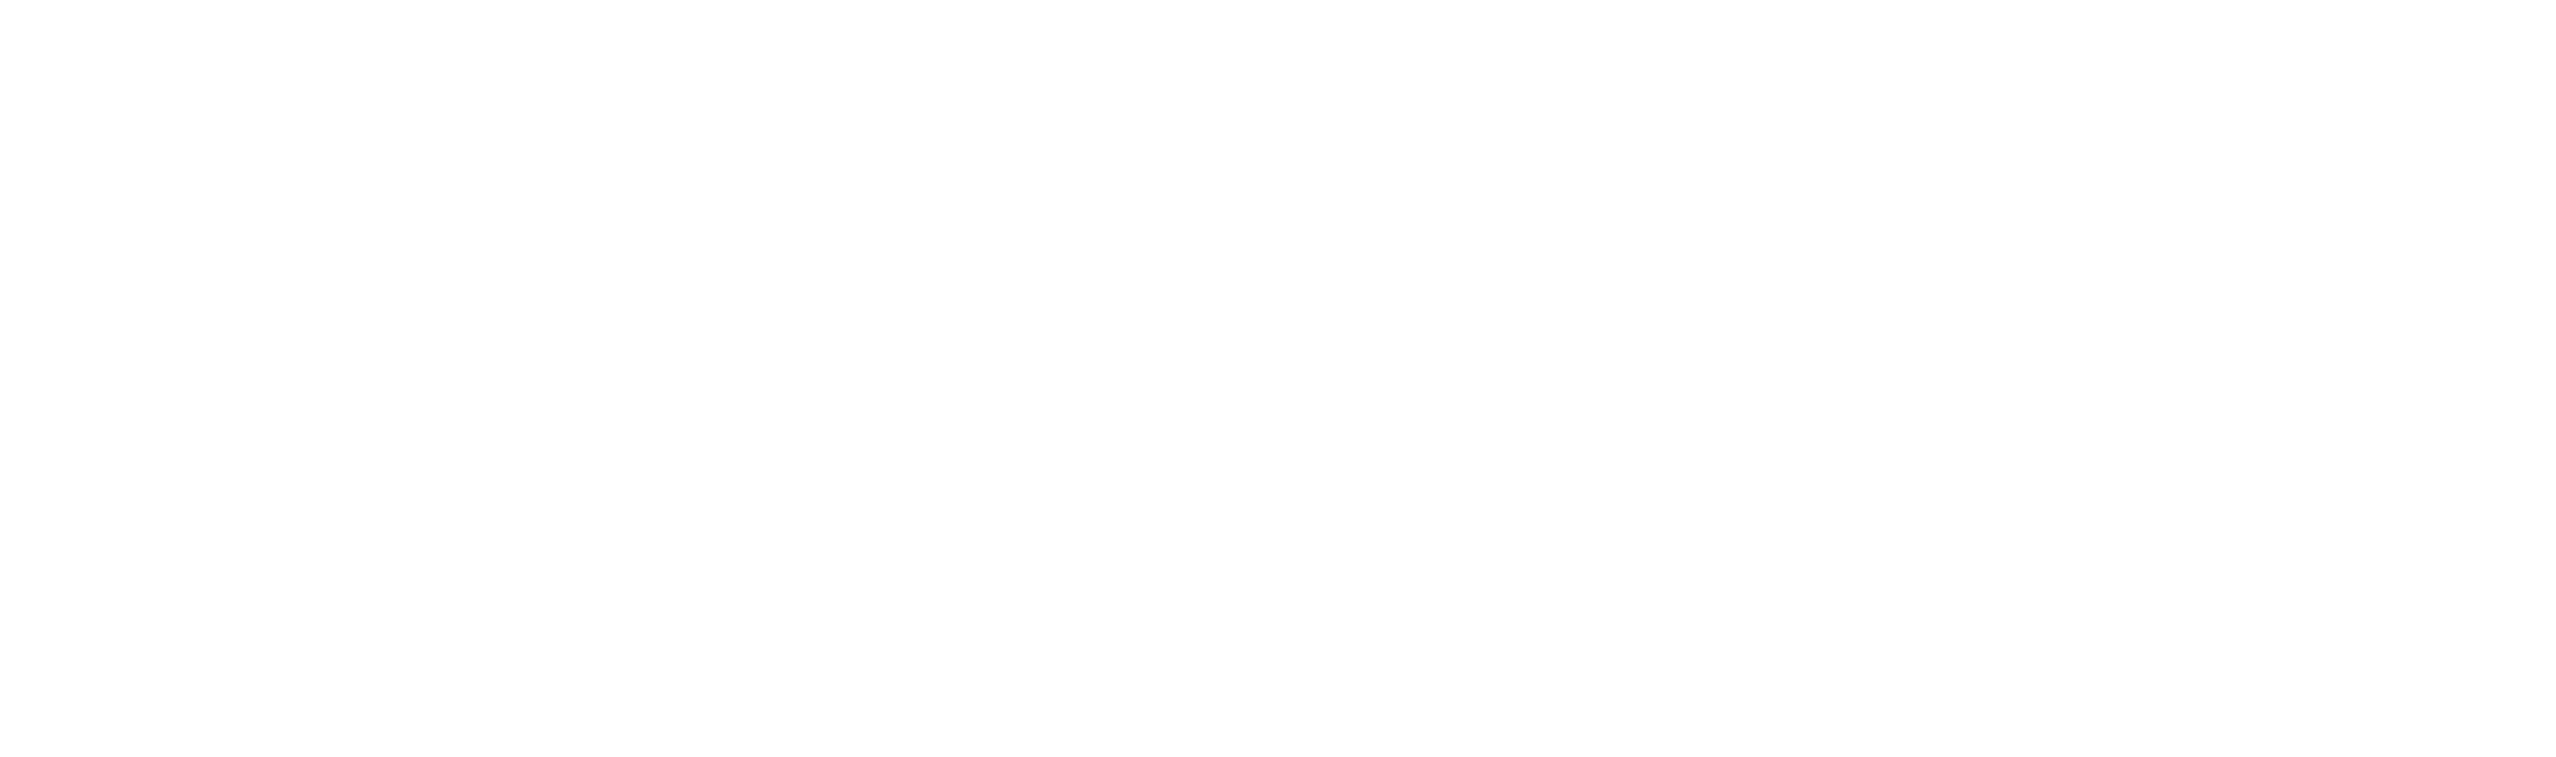 Endless Events Logo White